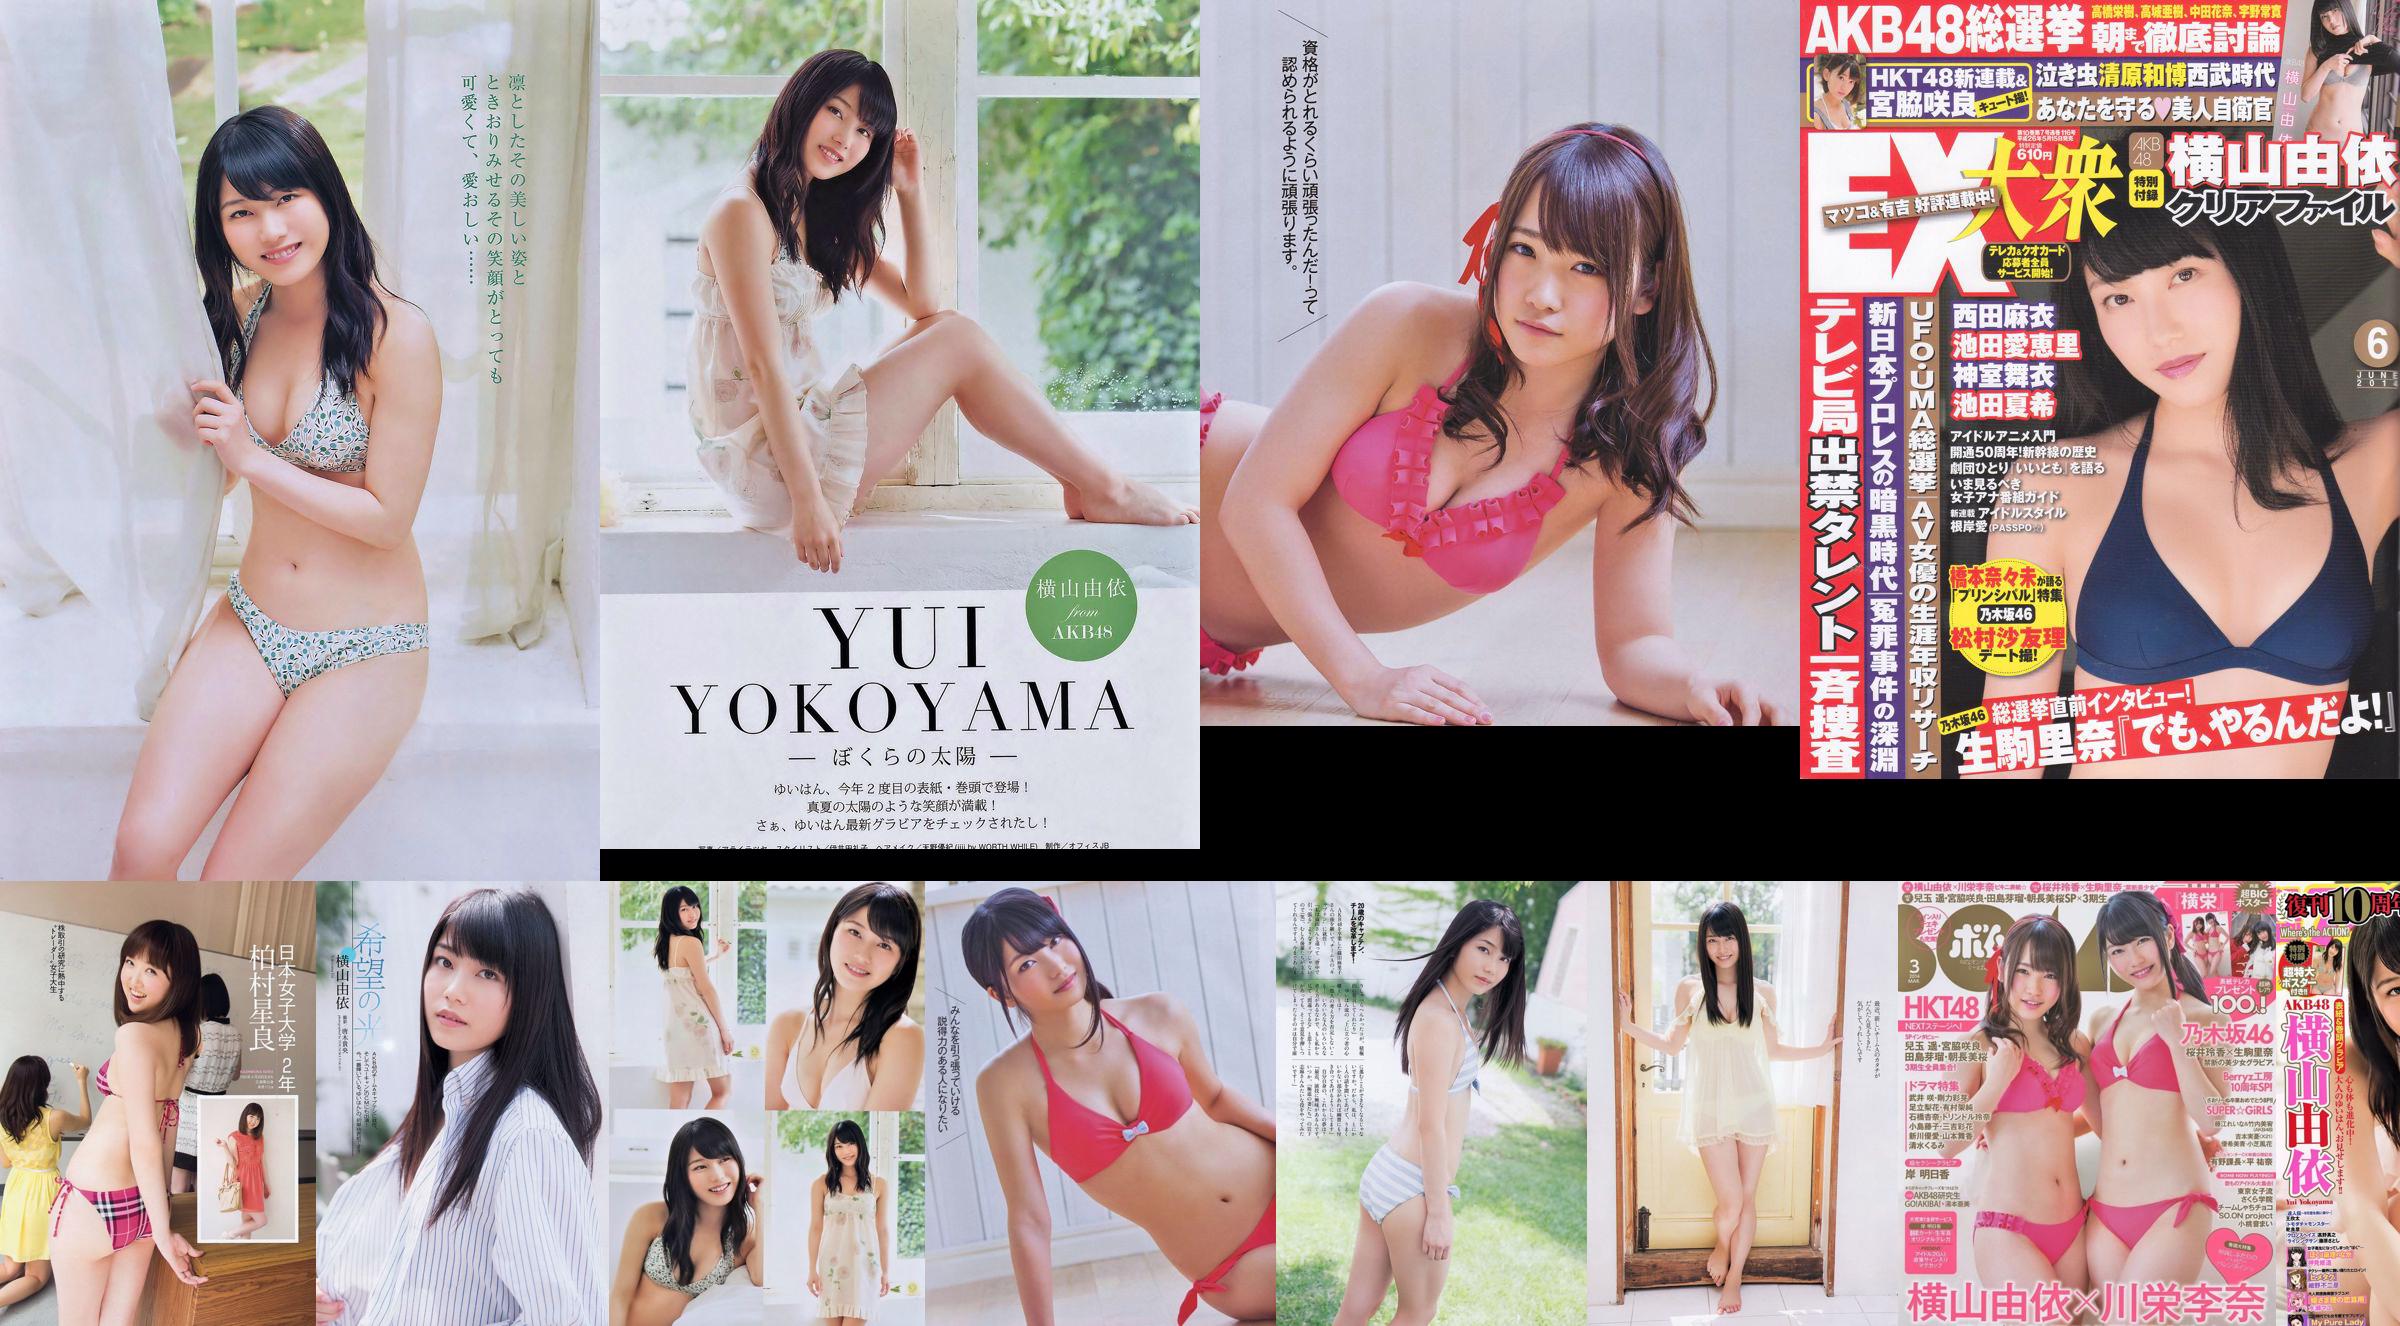 [EX Taishu] Yokoyama Yui, Miyawaki Sakura, Matsumura Sa Yuri 2014 No.06 Photo Magazine No.f715d3 페이지 4